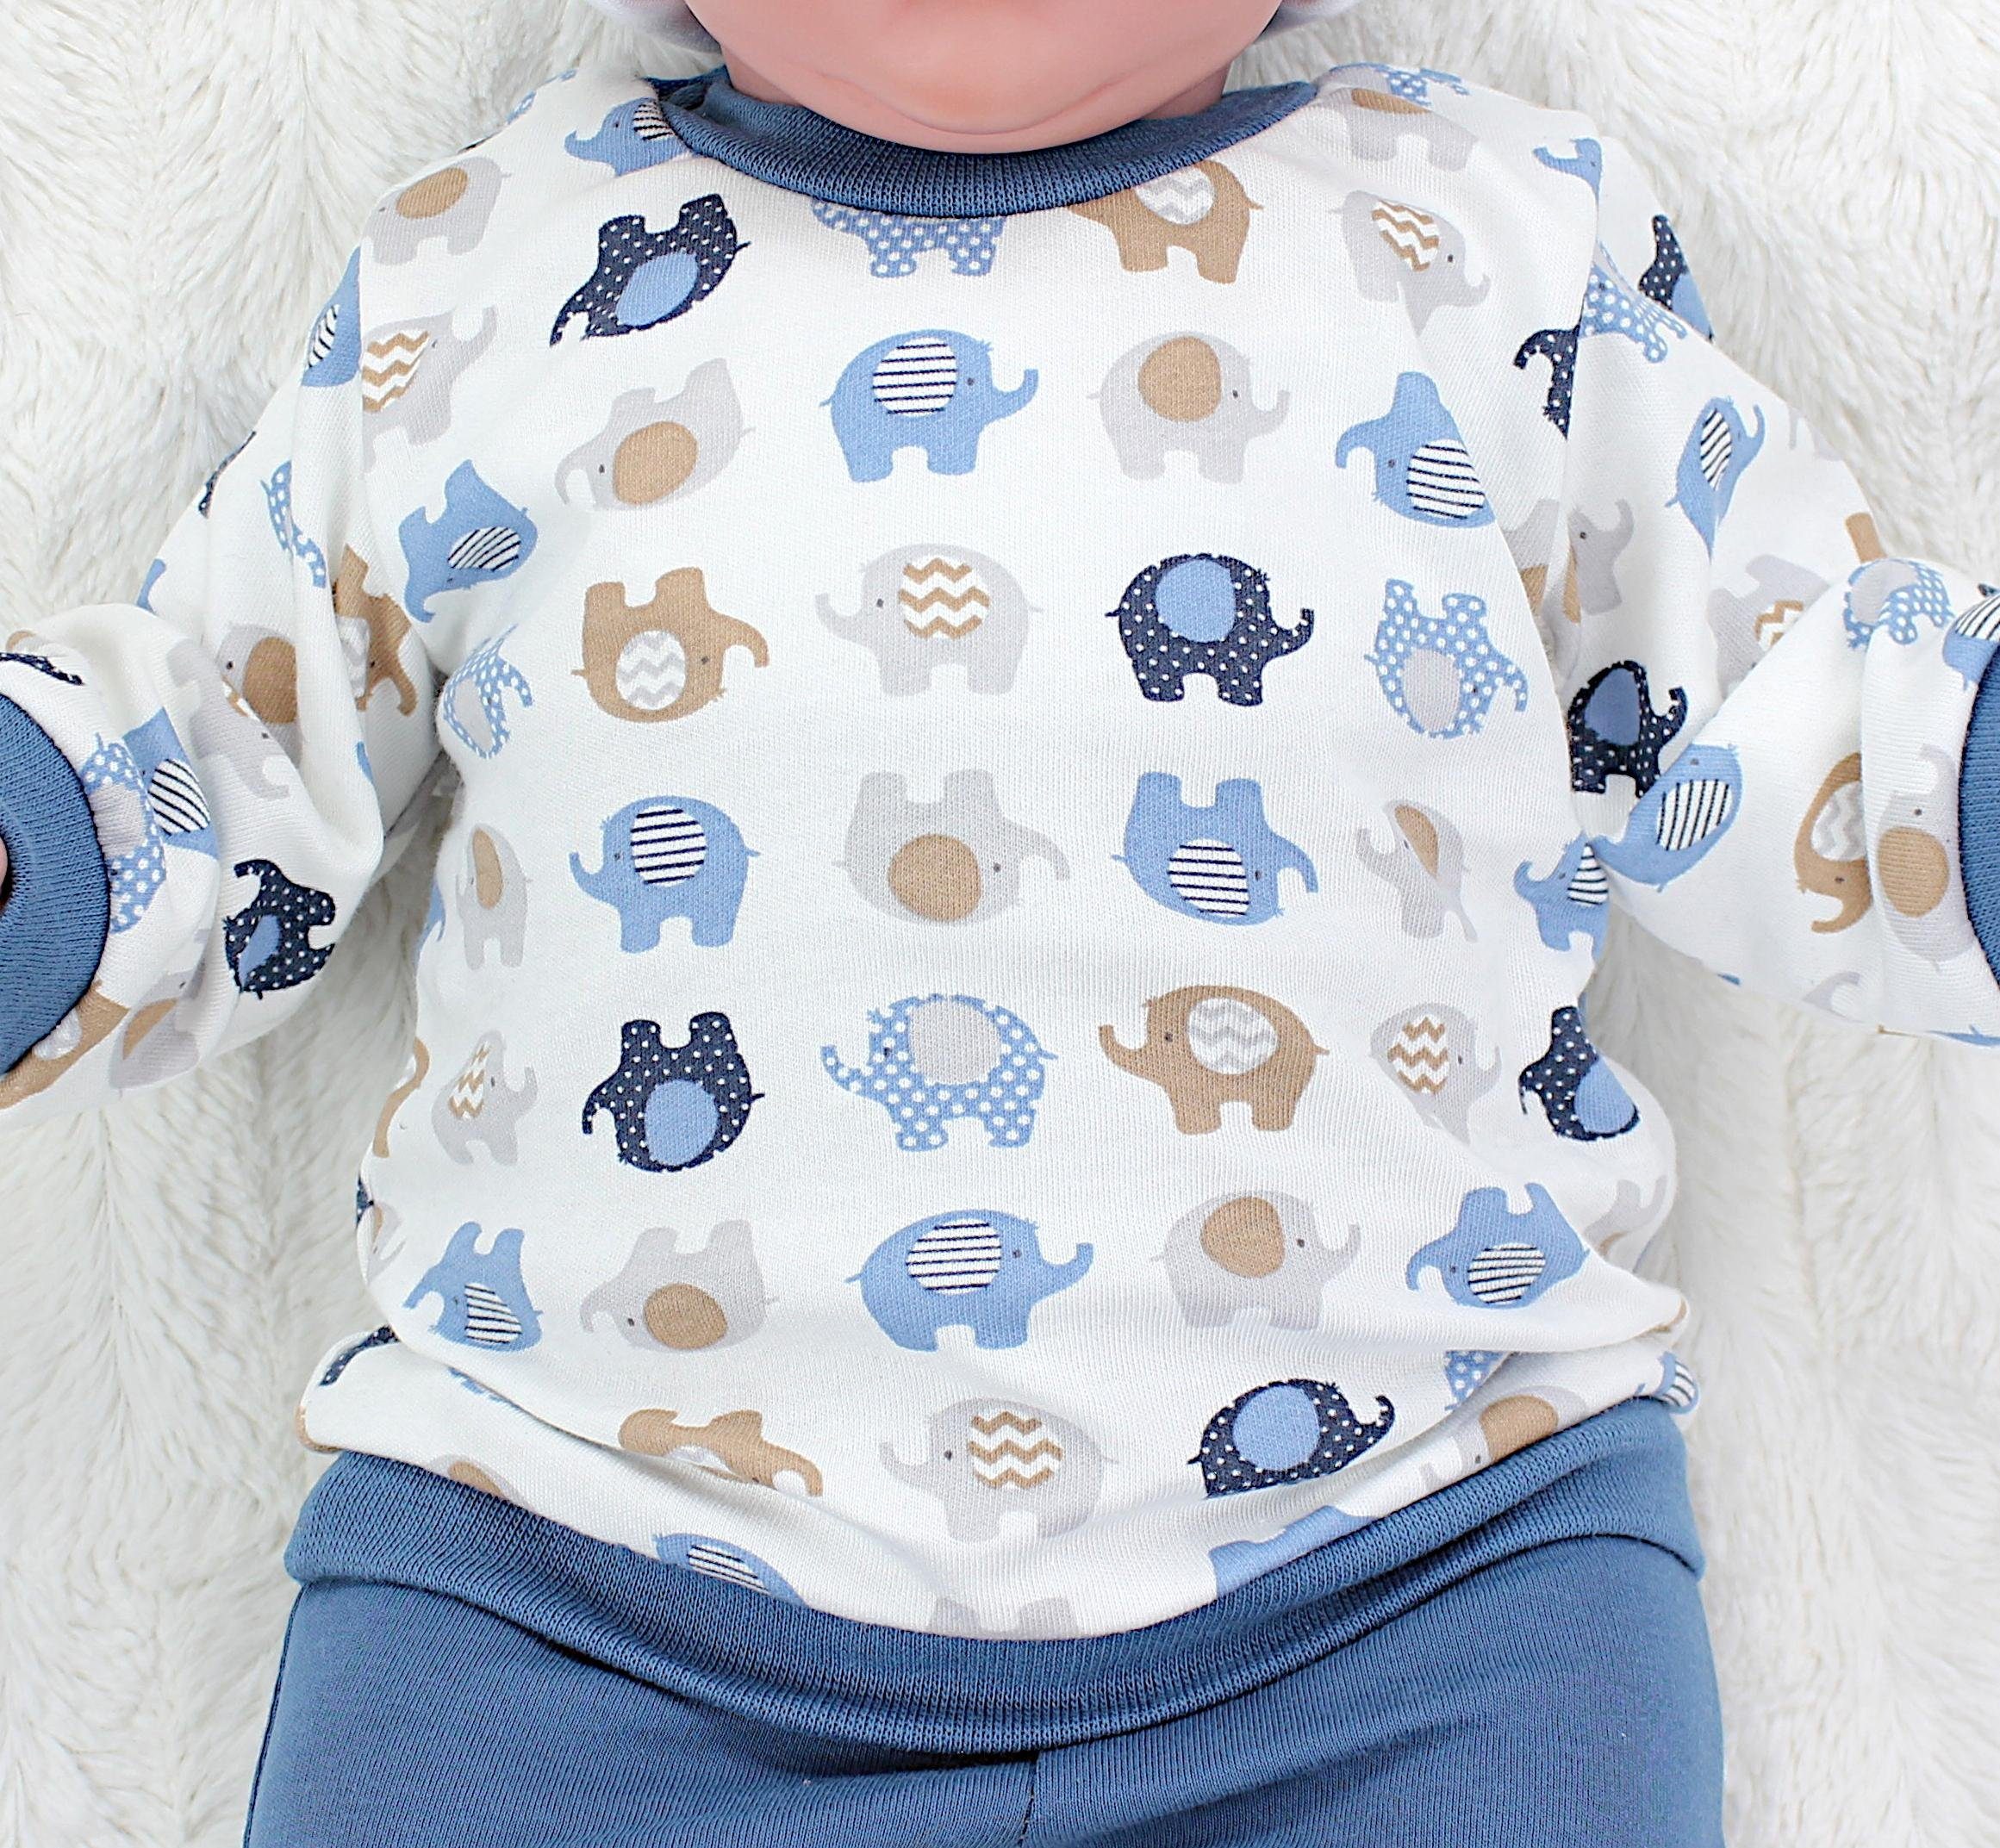 Jungen TupTam Spruch Erstausstattungspaket Elefanten Jeansblau mit Babykleidung Langarmshirt Print Baby Outfit Babyhose